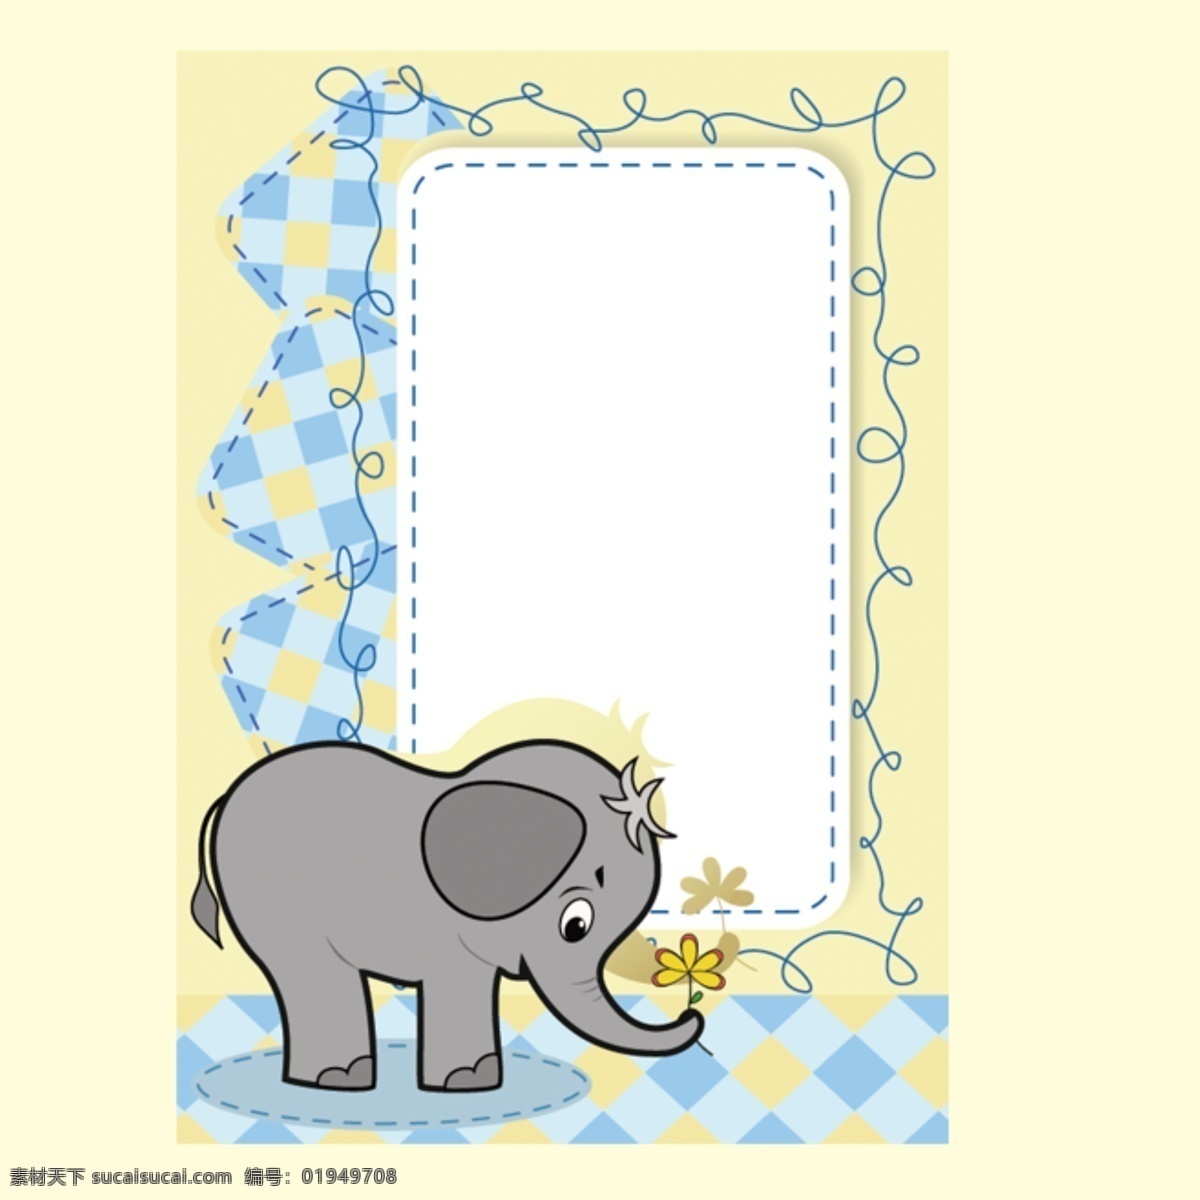 可爱卡通相框 可爱动物 相框设计 大象 可爱边框